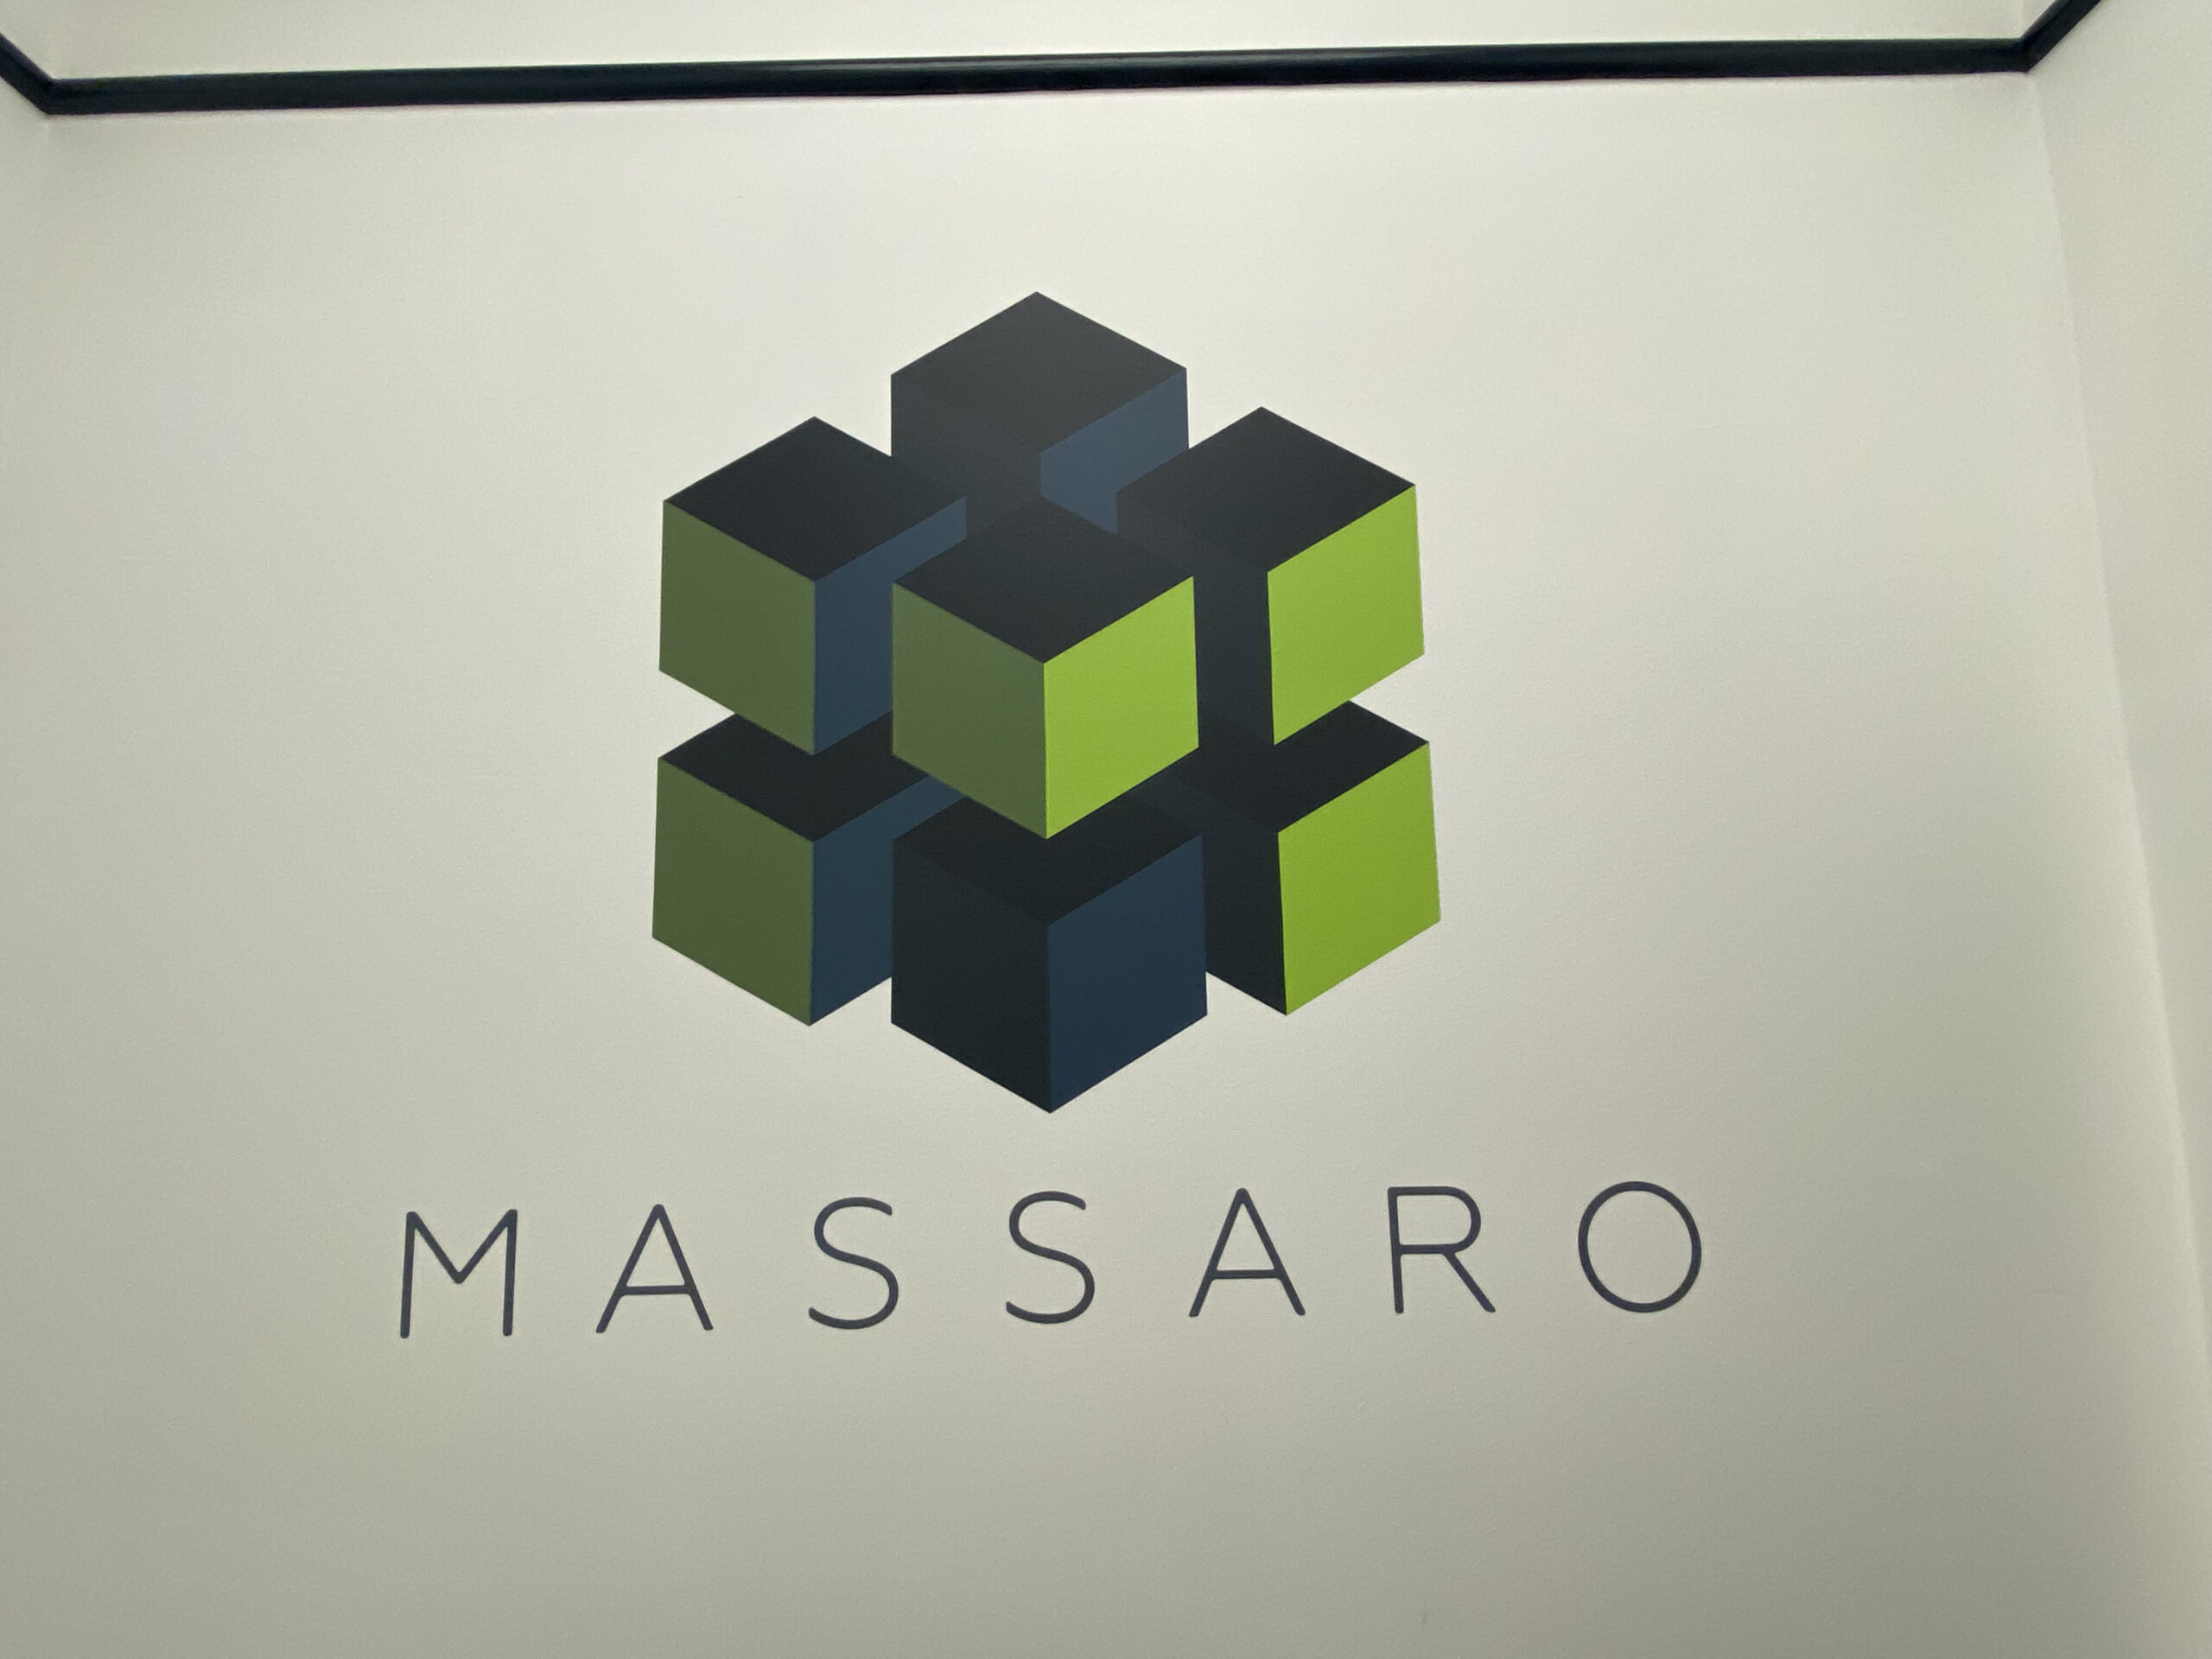 Massaro Wall Graphic